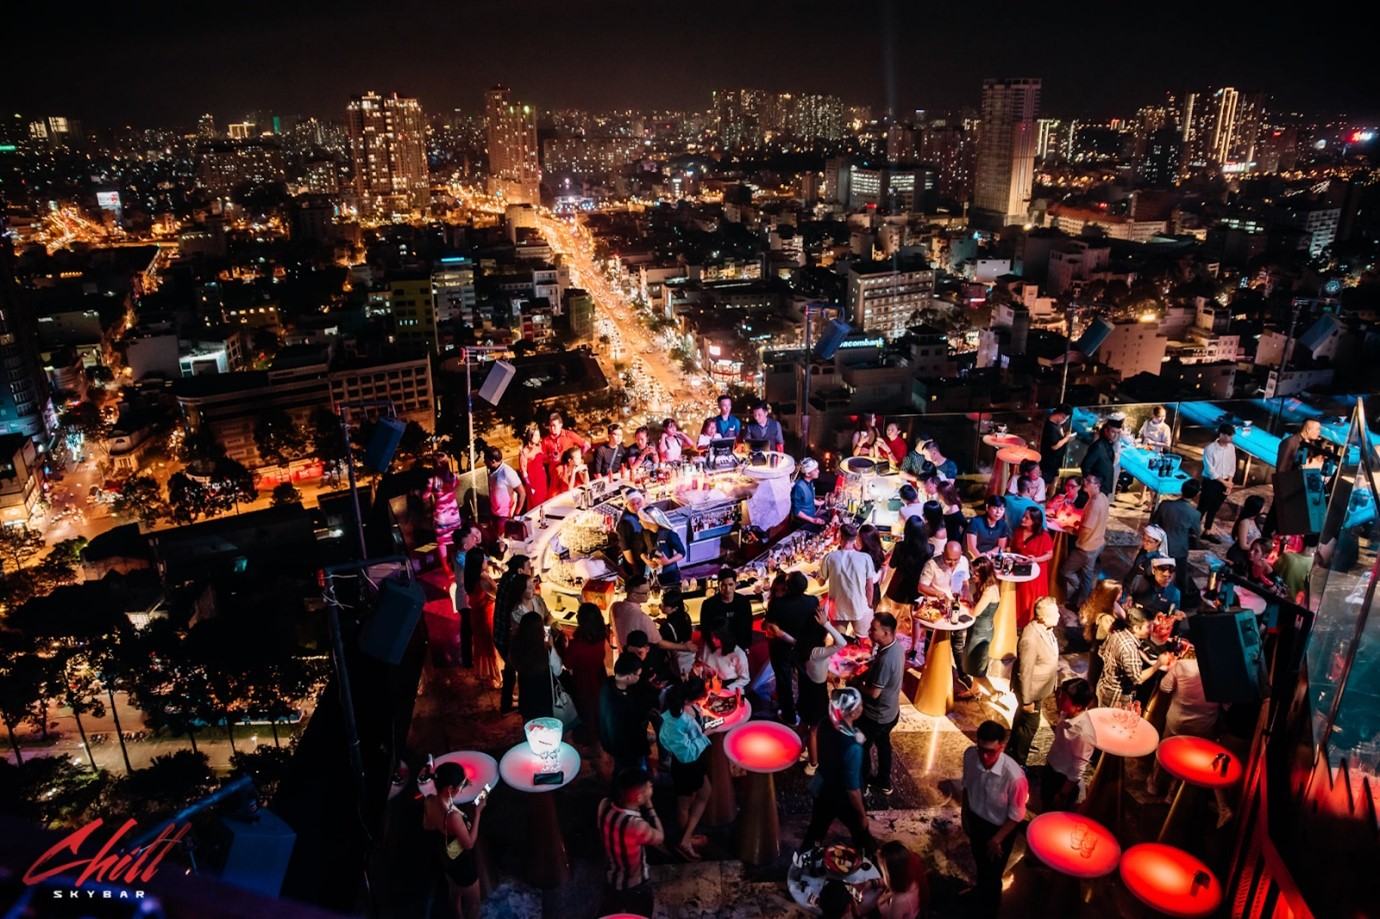 Chill Skybar - Điểm ăn chơi 'chanh sả' giữa trung tâm Sài Gòn